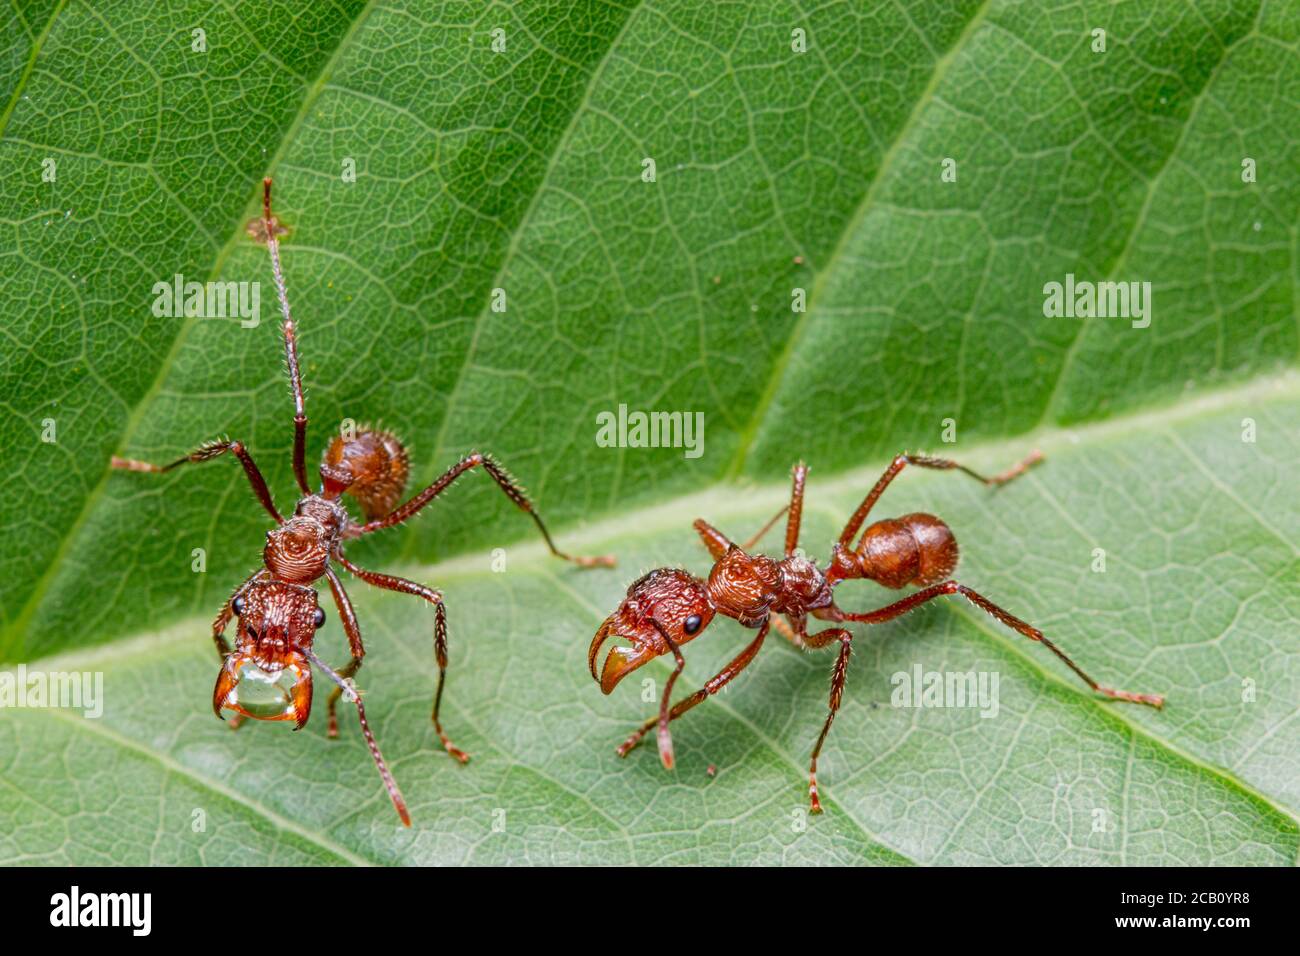 Ectatomma tuberculatum est un fourmi qui peut être un constituant commun et facilement observable des communautés fourmi dans un habitat favorable. Ibague, Tolima, Colombie Banque D'Images